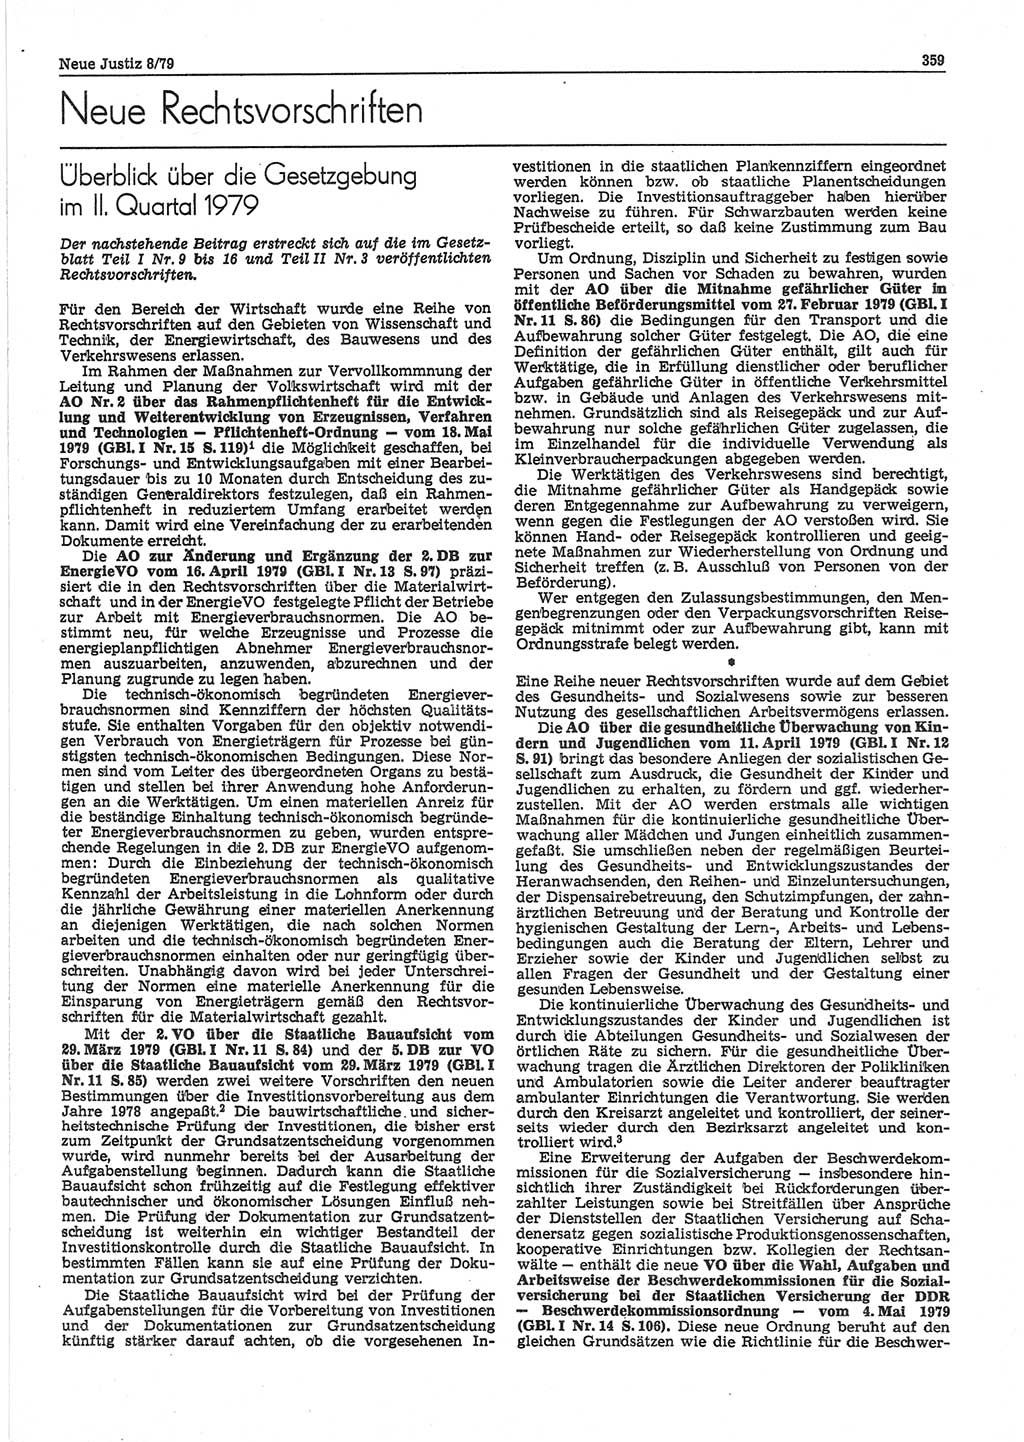 Neue Justiz (NJ), Zeitschrift für sozialistisches Recht und Gesetzlichkeit [Deutsche Demokratische Republik (DDR)], 33. Jahrgang 1979, Seite 359 (NJ DDR 1979, S. 359)